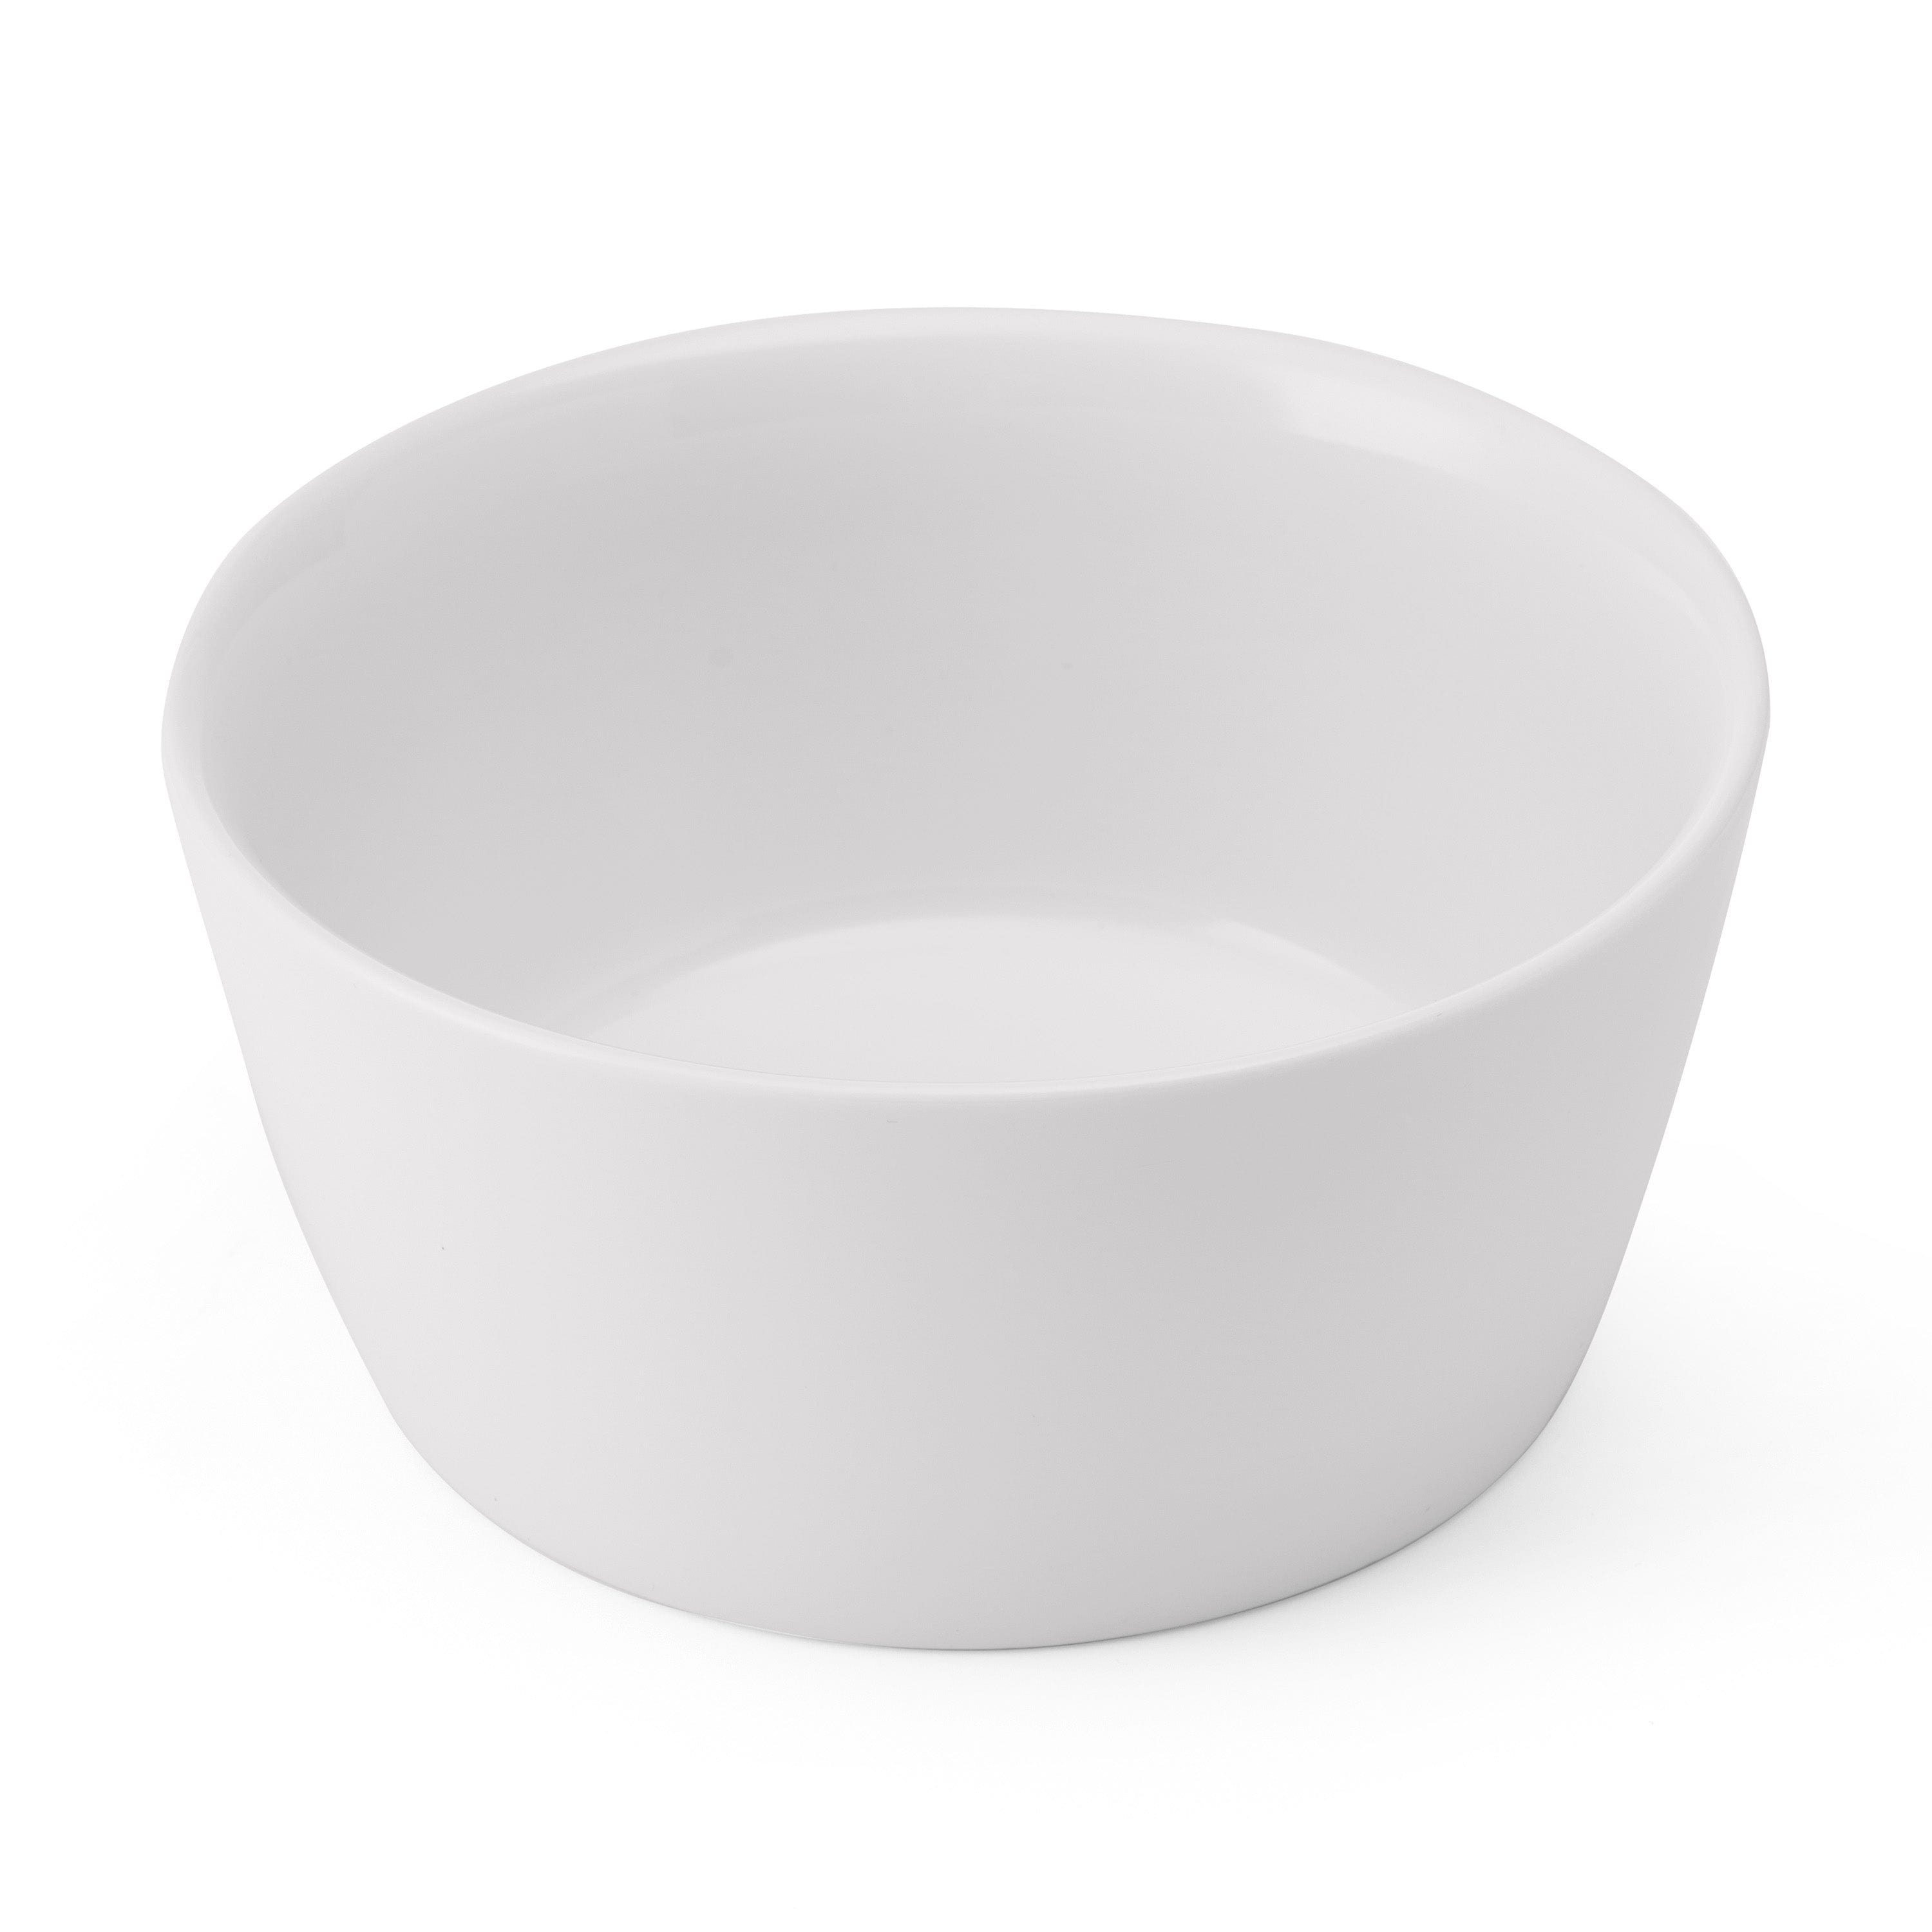 Specials Porcelain Bowl 5.8" / 26oz White